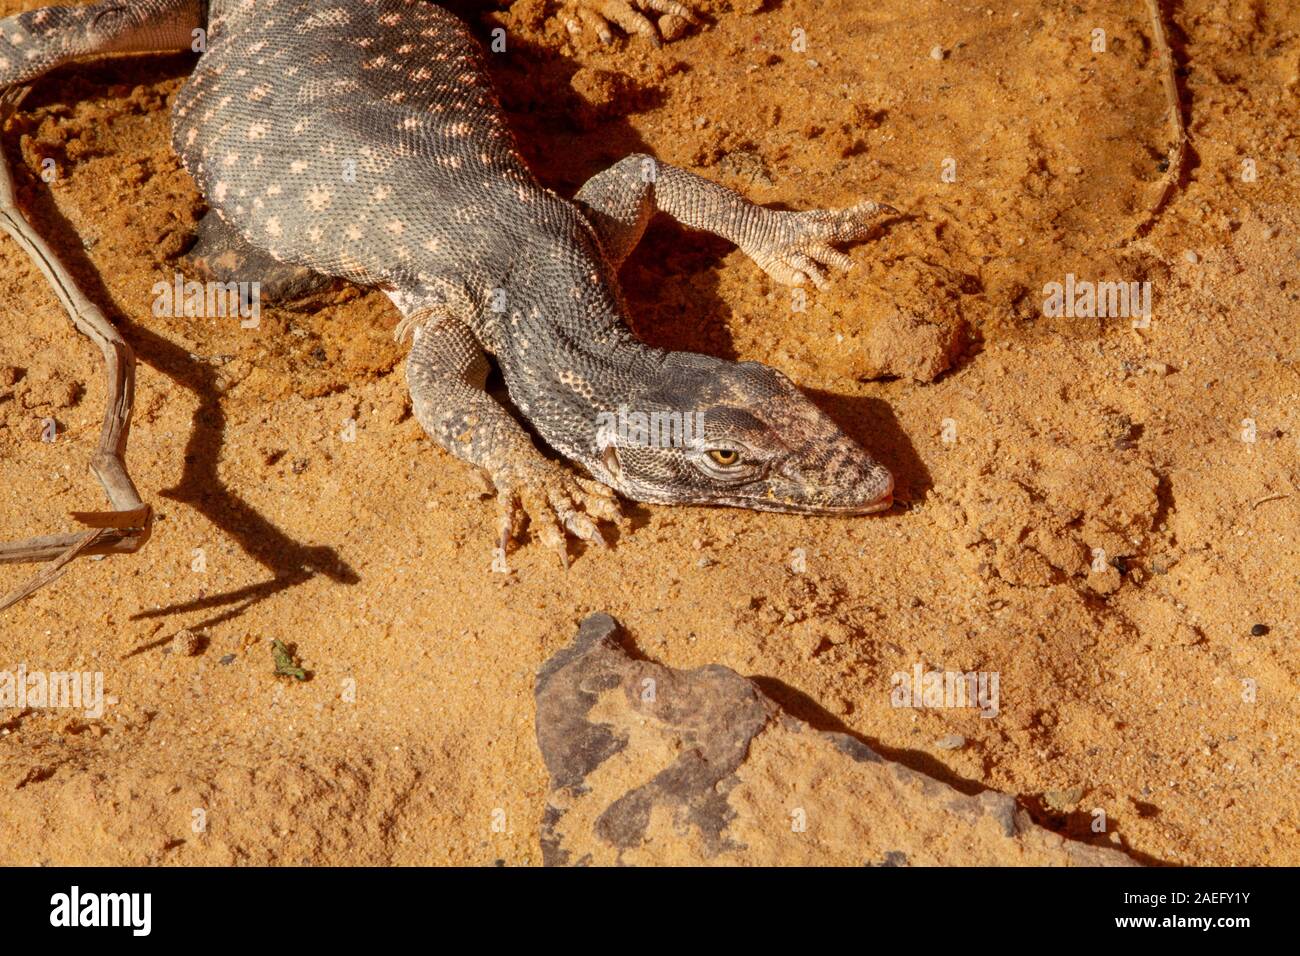 Moniteur du désert (Varanus griseus). une espèce de lézards de l'ordre Squamata trouvés dans toute l'Afrique du Nord et l'Asie centrale et du Sud. Banque D'Images